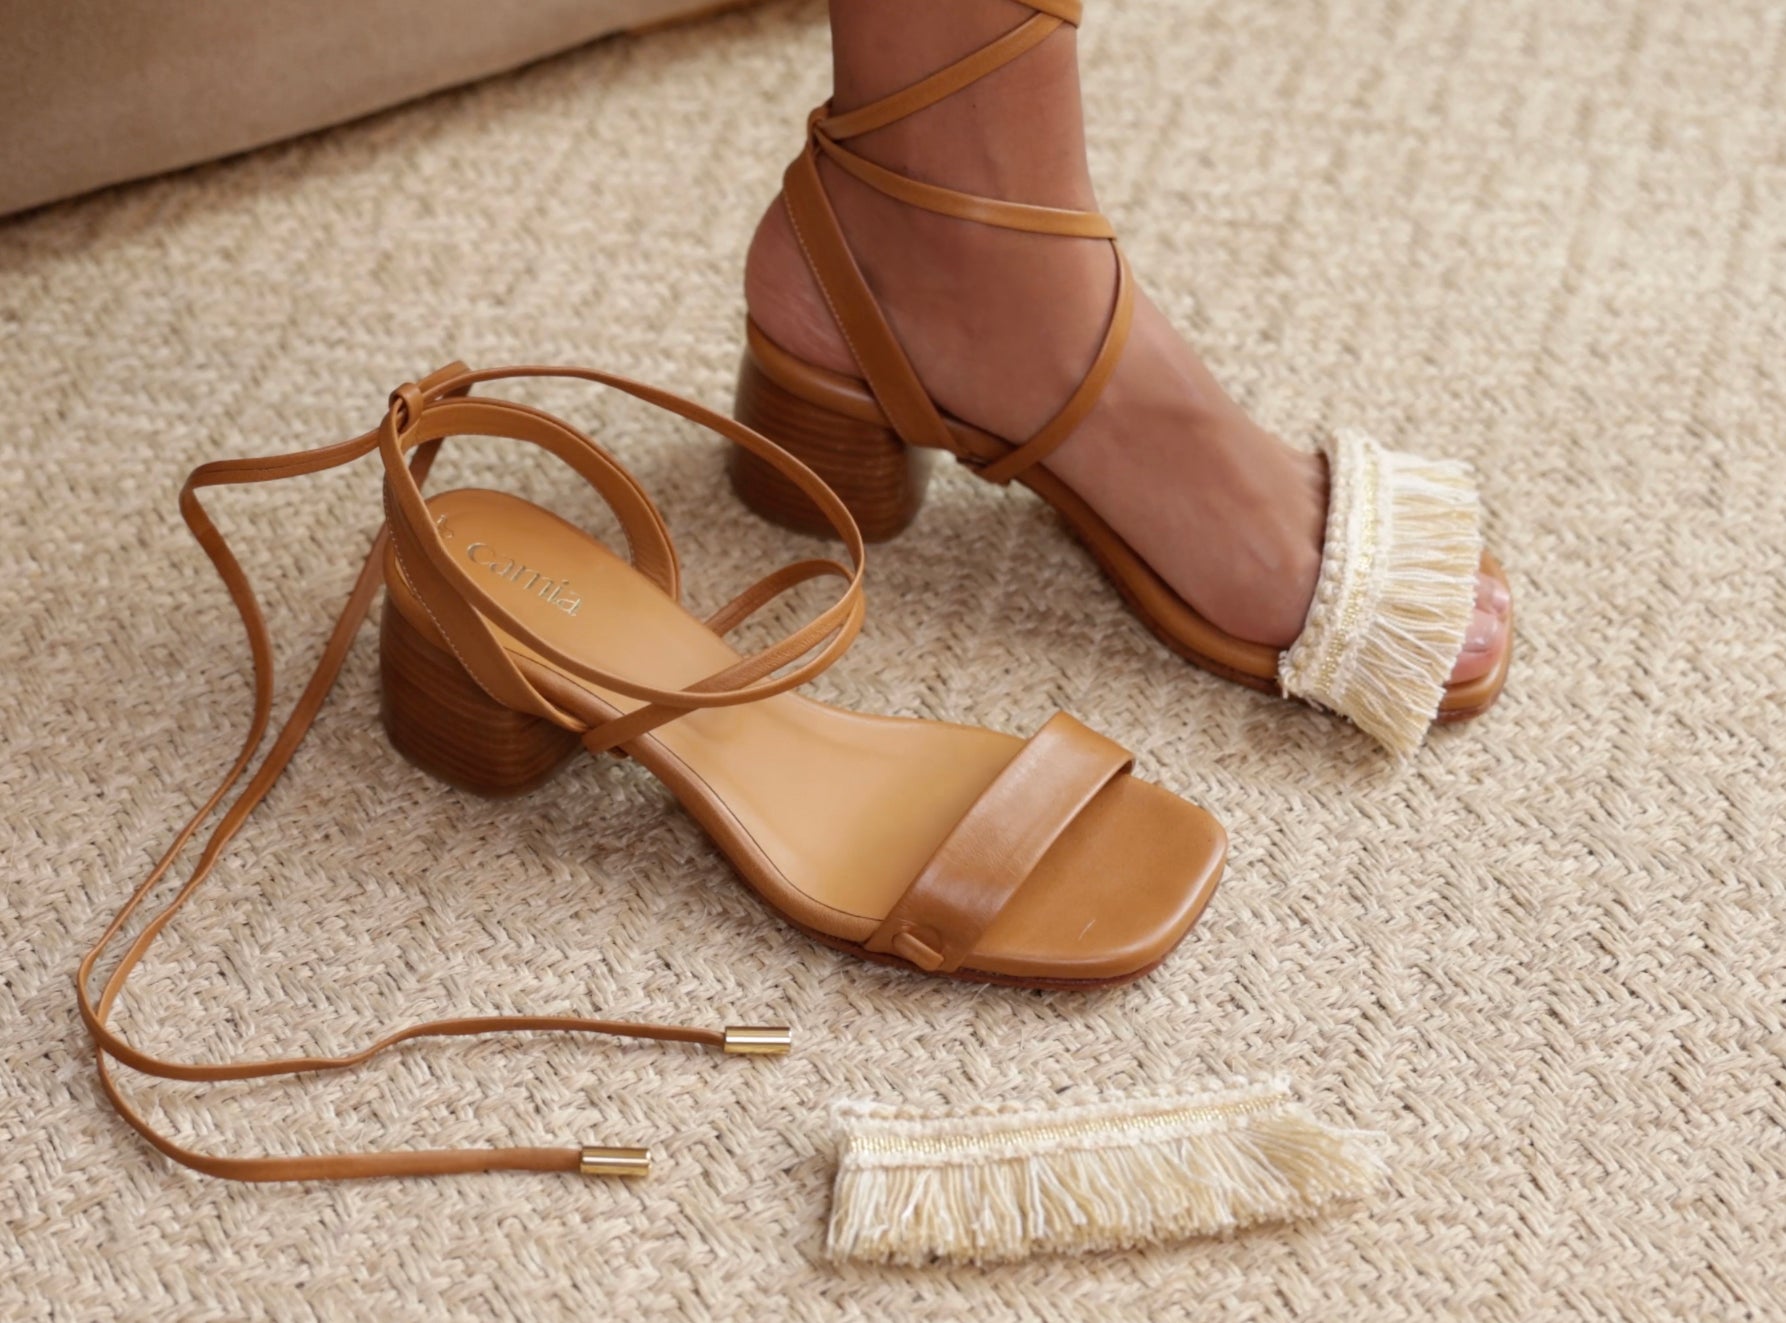 Camia, a unique concept of interchangeable sandals